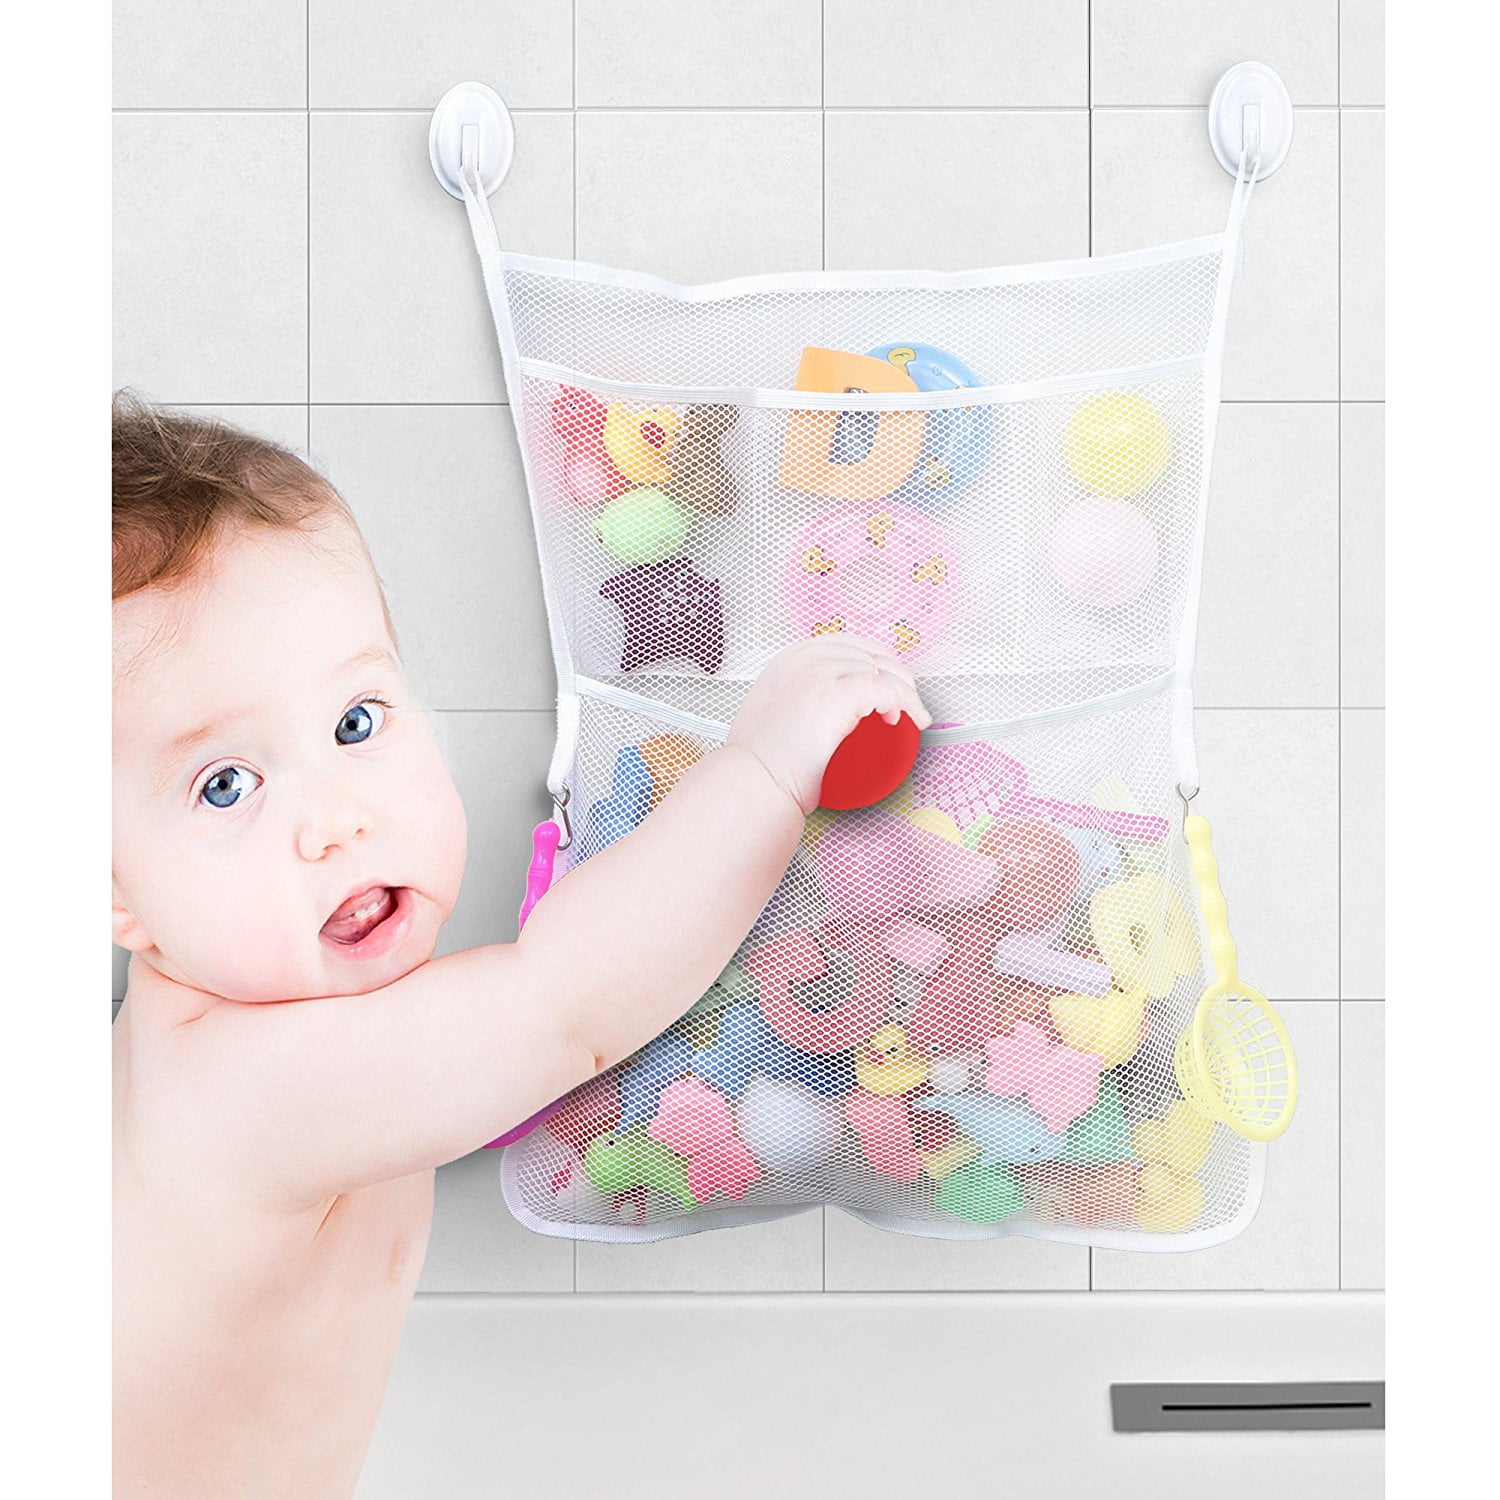 New Bath Kids Toy Bathroom Organizer Mesh Bag Net Holder Baby Shower Storage Hot 